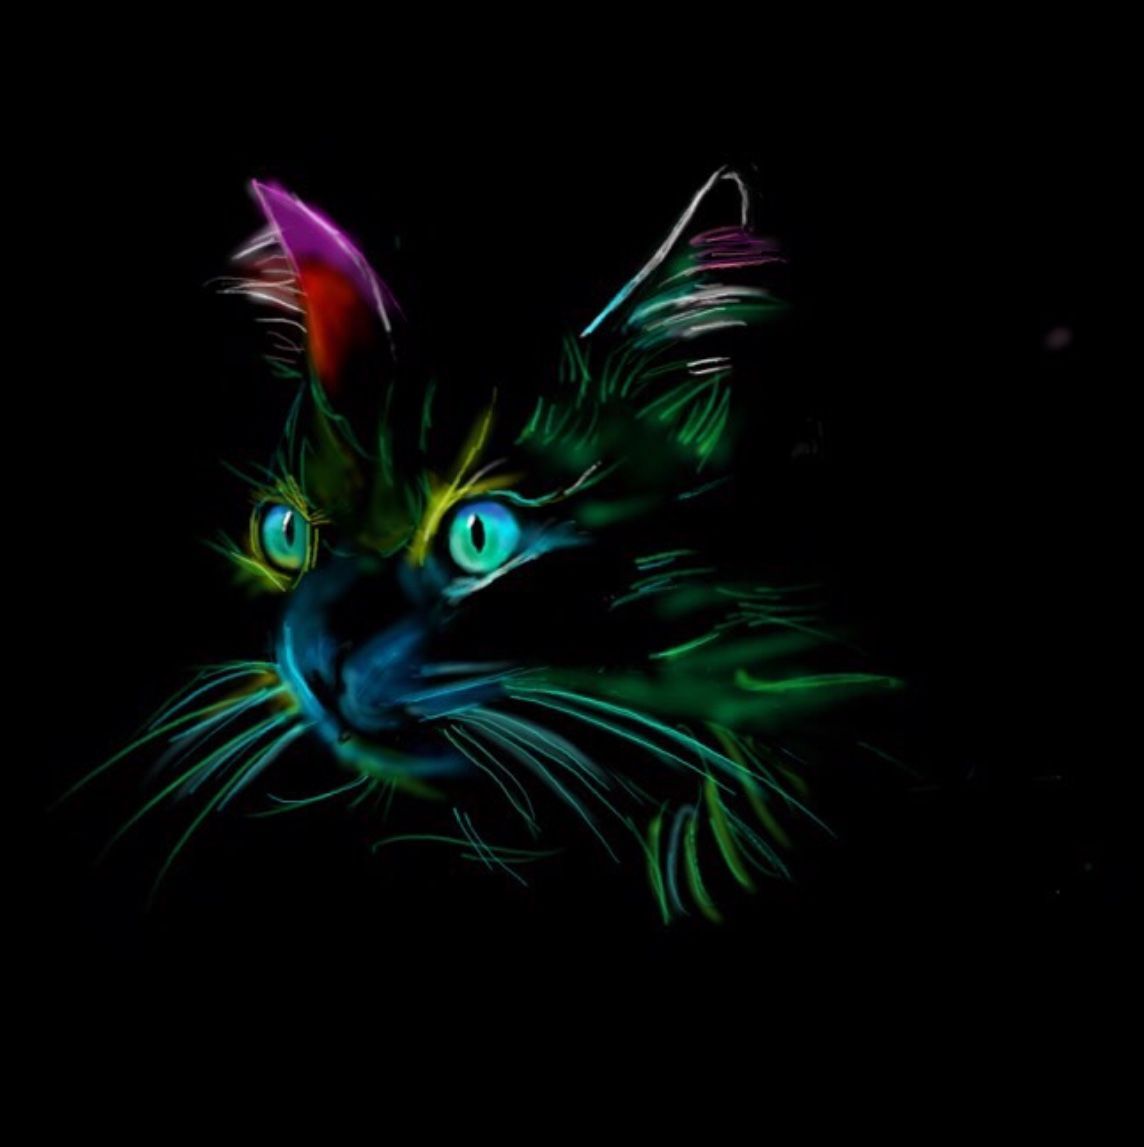 Lovely neon kitty